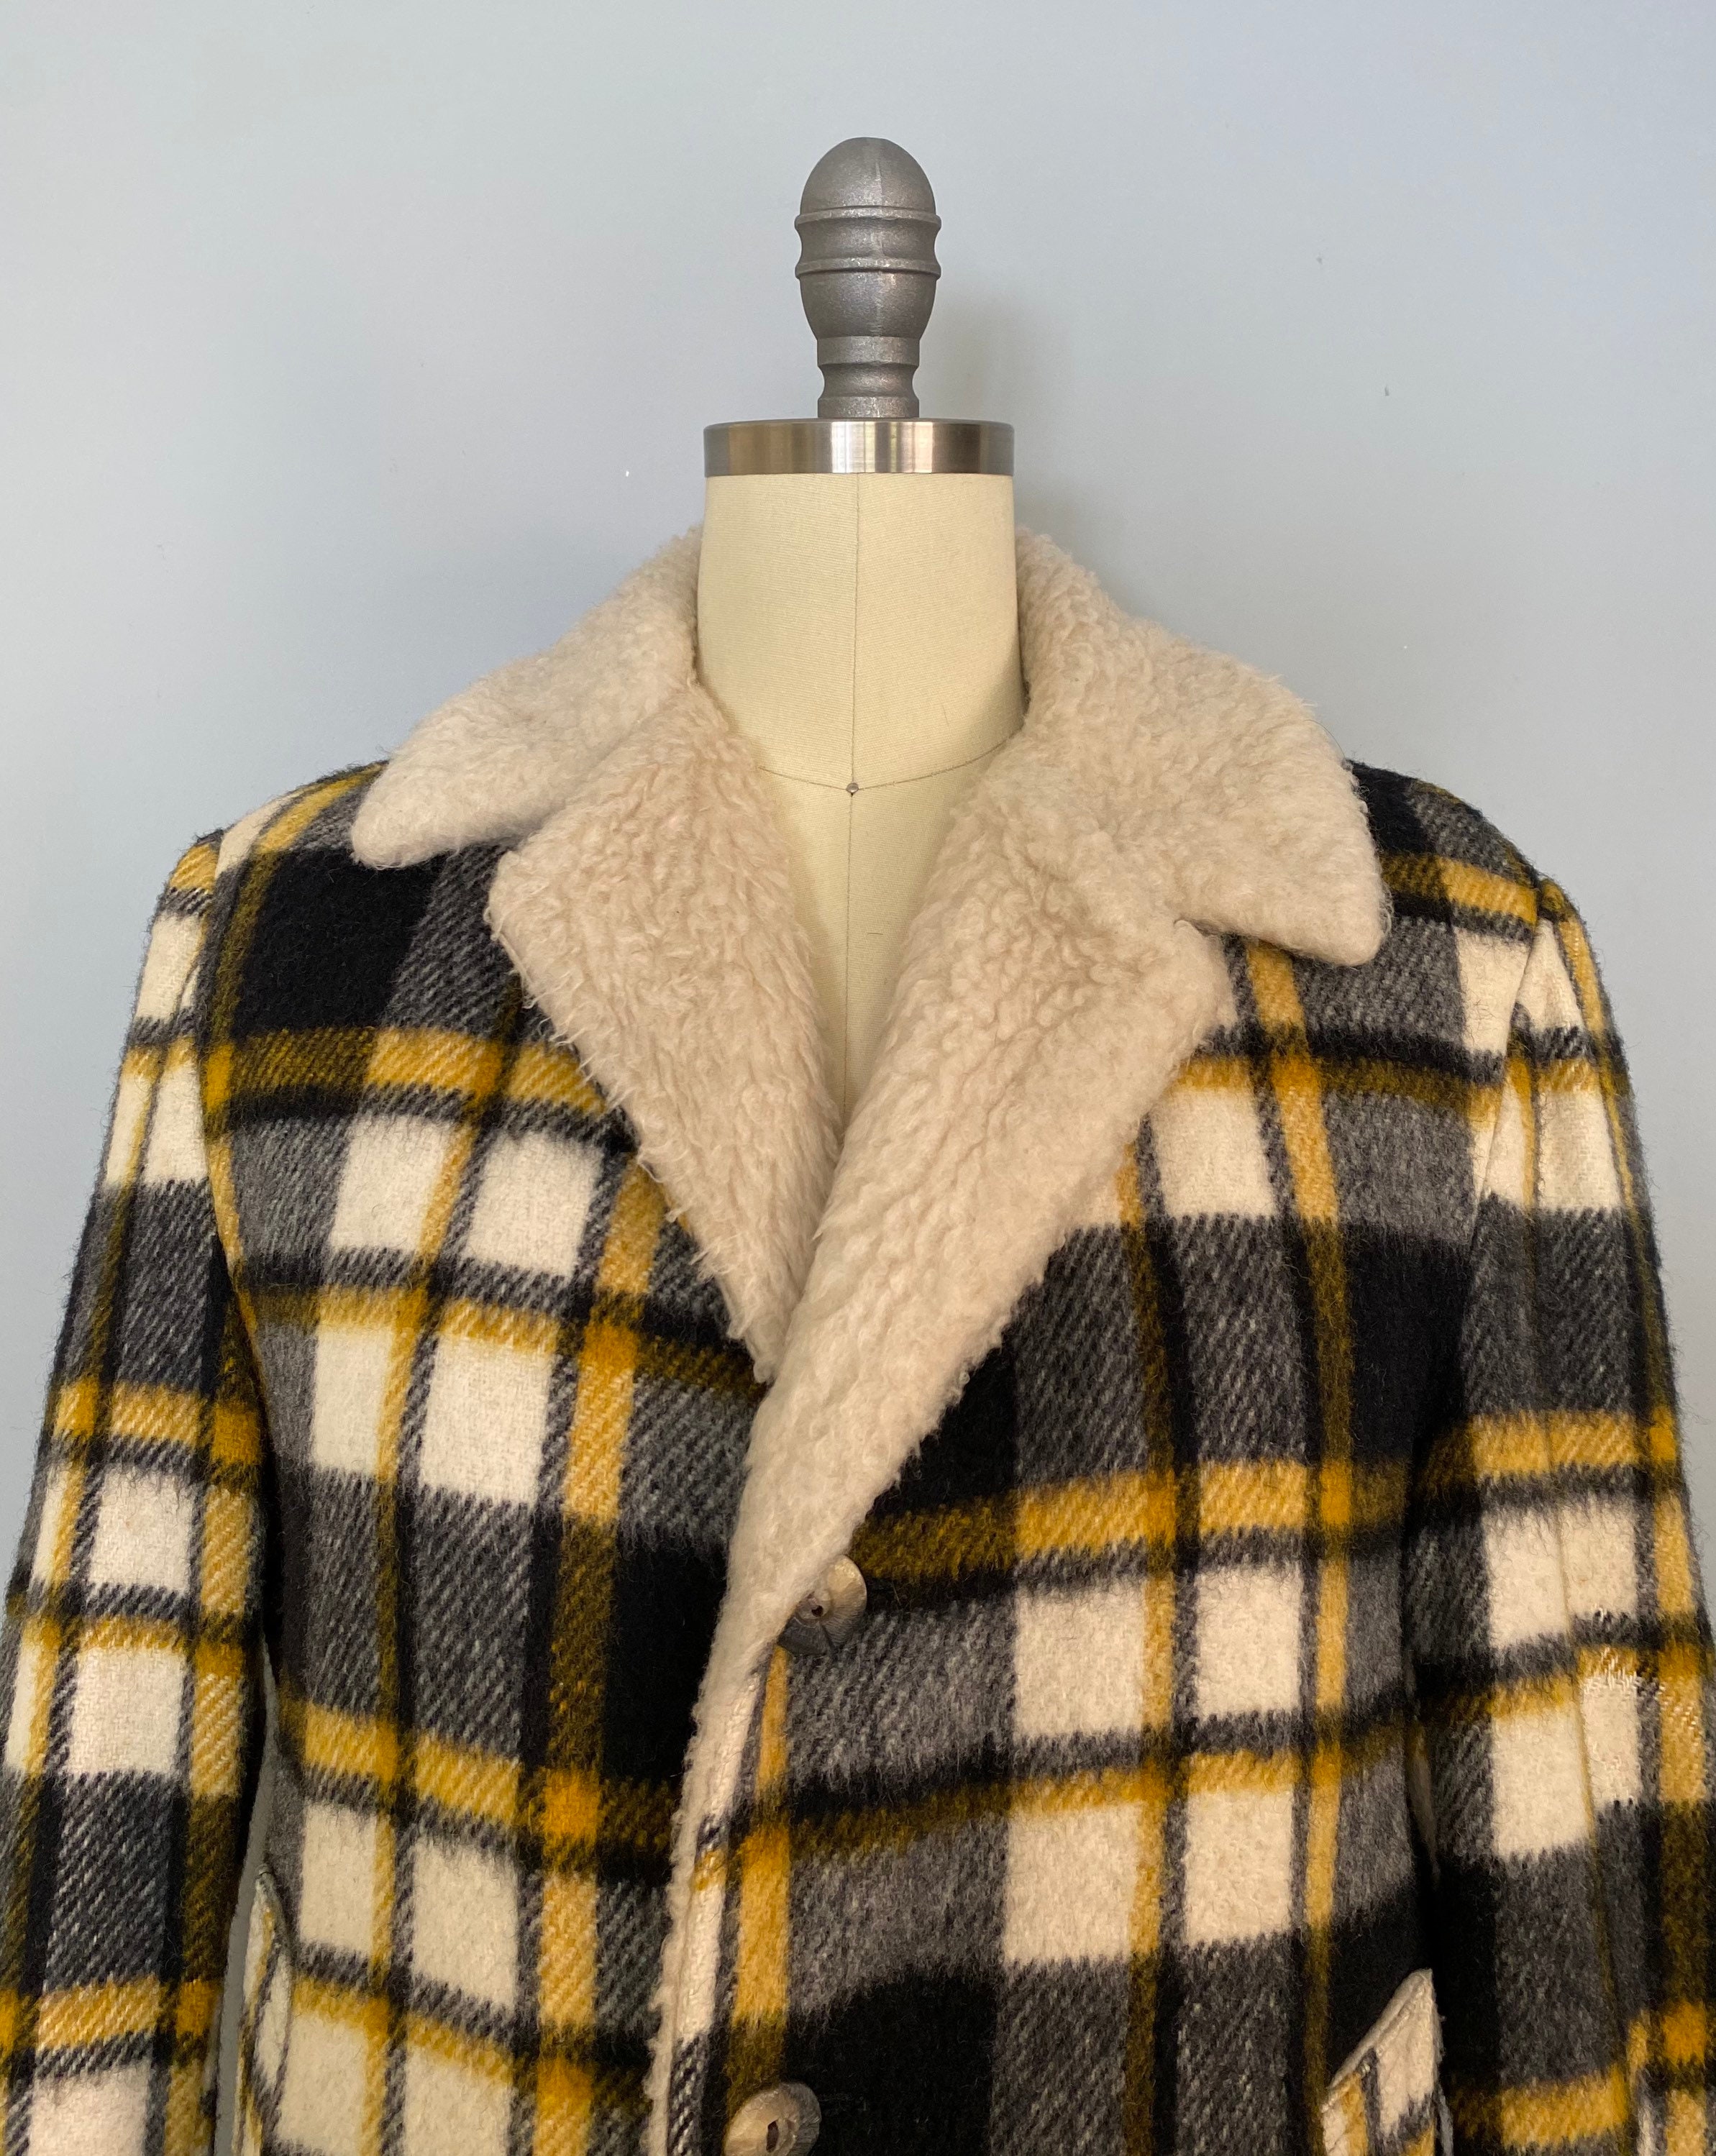 Plaid jacket vintage 1970s Lumberjack coat 70s wool sherpa | Etsy